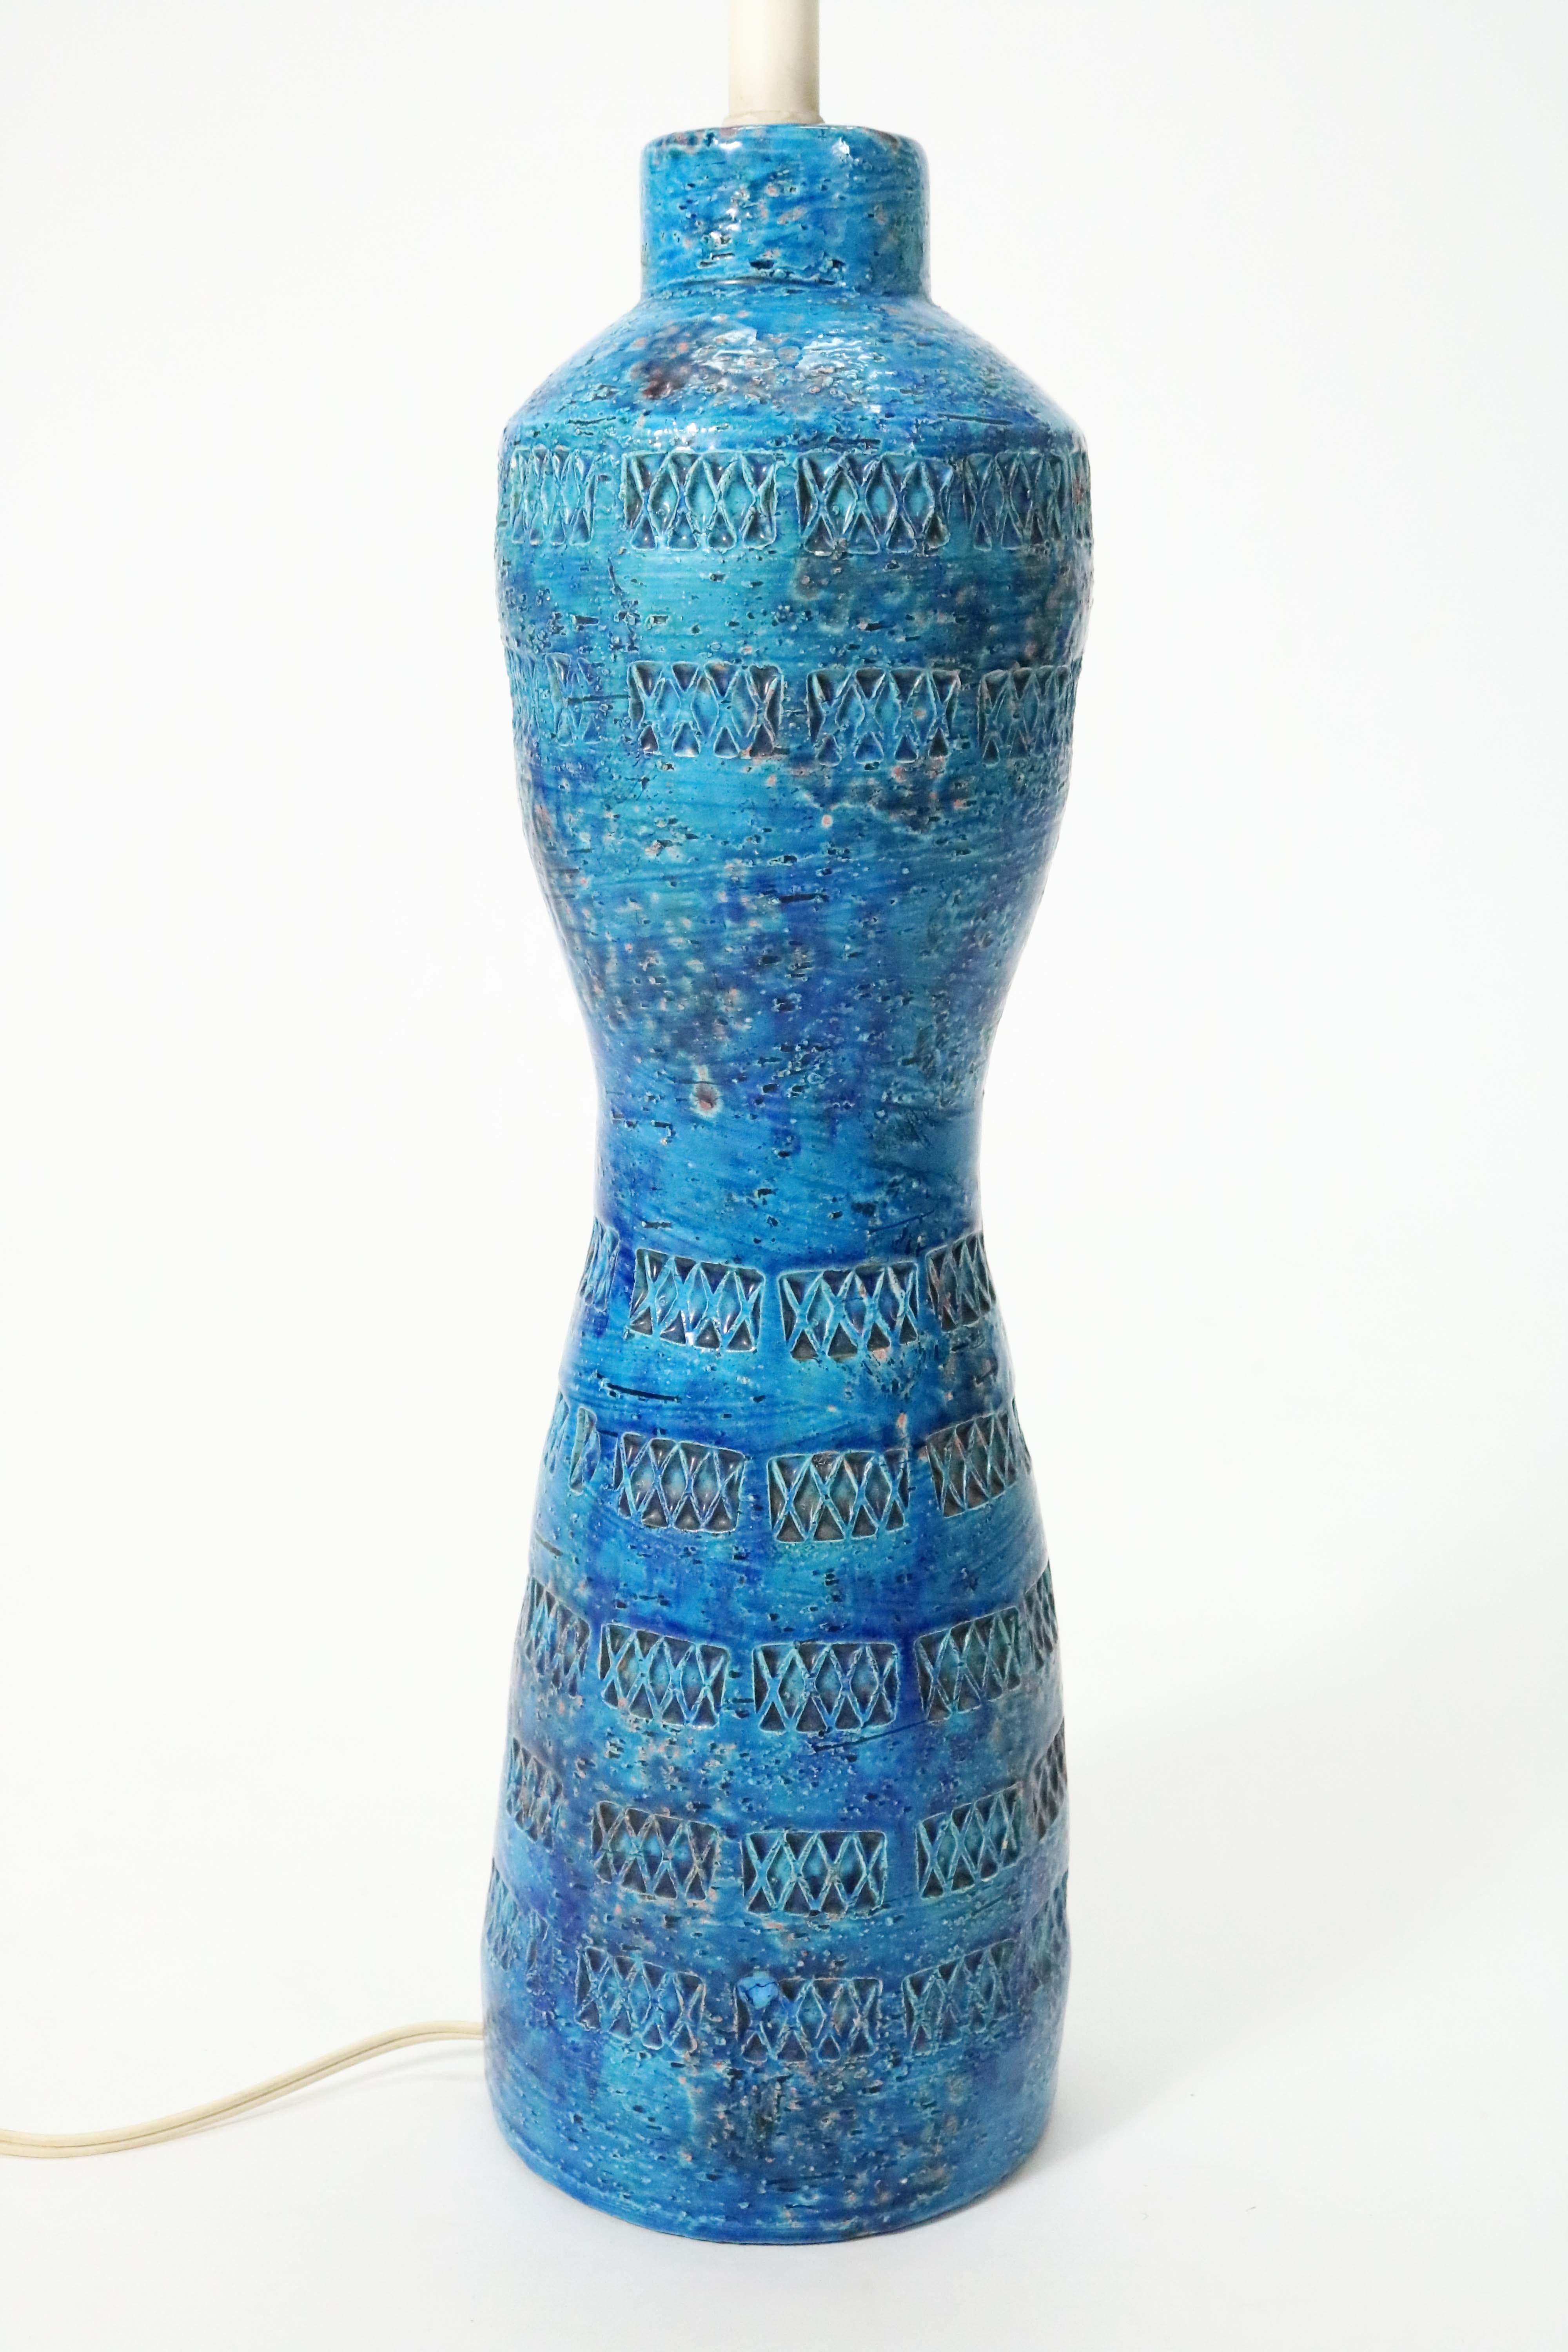 'Rimini Blu' Ceramic Lamp by Aldo Londi for Bitossi 5